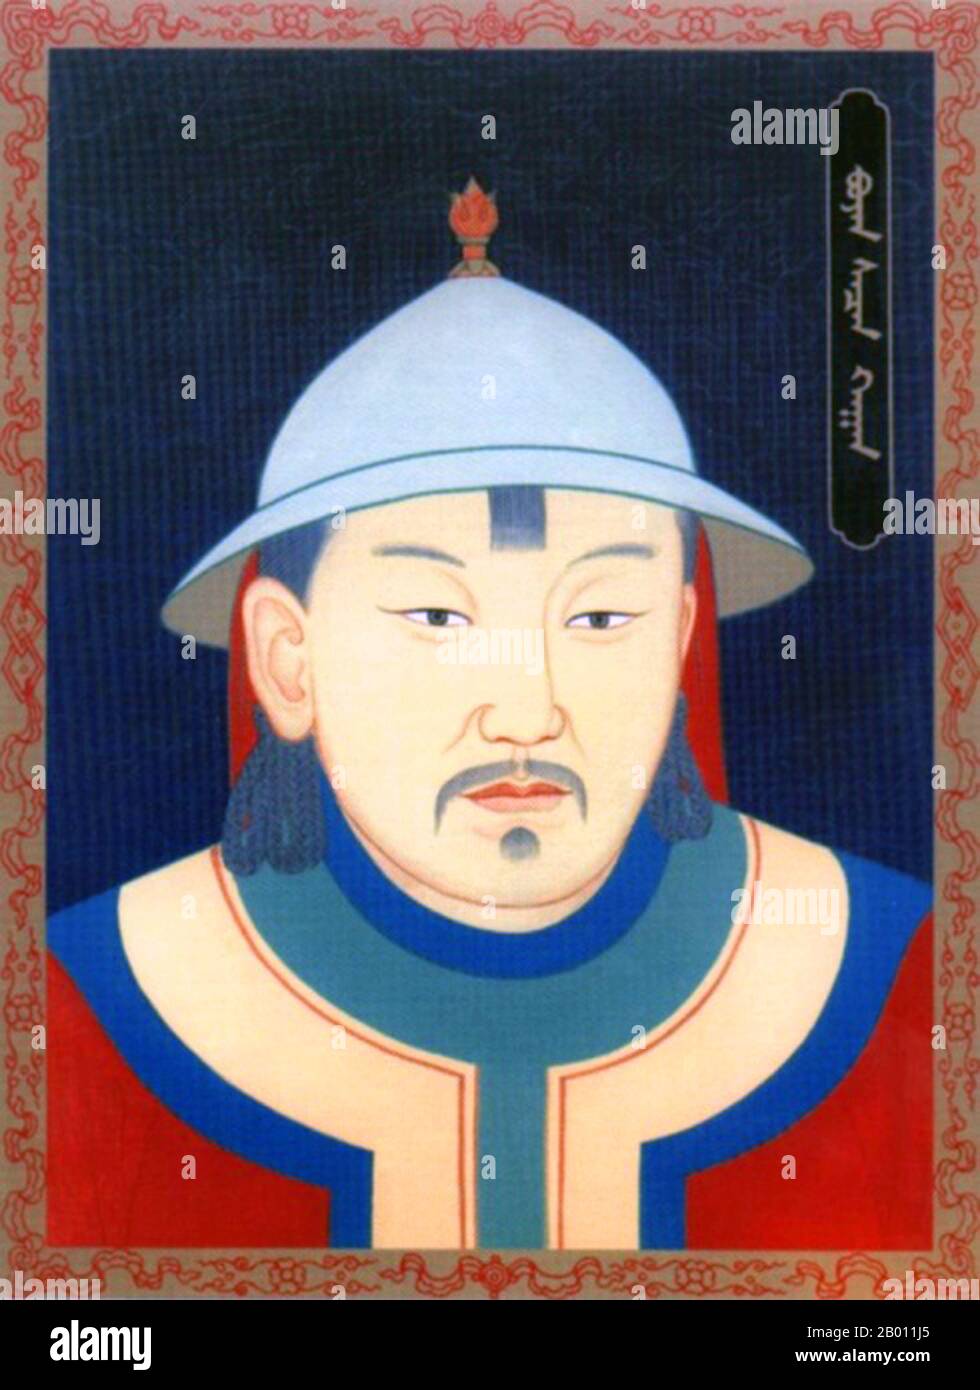 Mongolei: Buyan Sechen Khan, Khagan der Nördlichen Yuan-Dynastie (r. 1592-1604), 20. Jahrhundert. Buyan Sechen Khagan (1554–1604) war ein mongolischer khan der Nördlichen Yuan-Dynastie in der Mongolei und war der älteste Sohn von Tumen Jasagtu Khan, dem er nachfolgte. Unter seiner Herrschaft Gerät das mongolische Imperium erneut in Unordnung, wobei die Macht seines Titels nominal war. Seine Versuche, seine Herrschaft zu legitimieren, indem er den anderen mongolischen Clans das Kaiserliche Siegel Dschingis Khans zeigte, erwiesen sich als erfolglos. Stockfoto